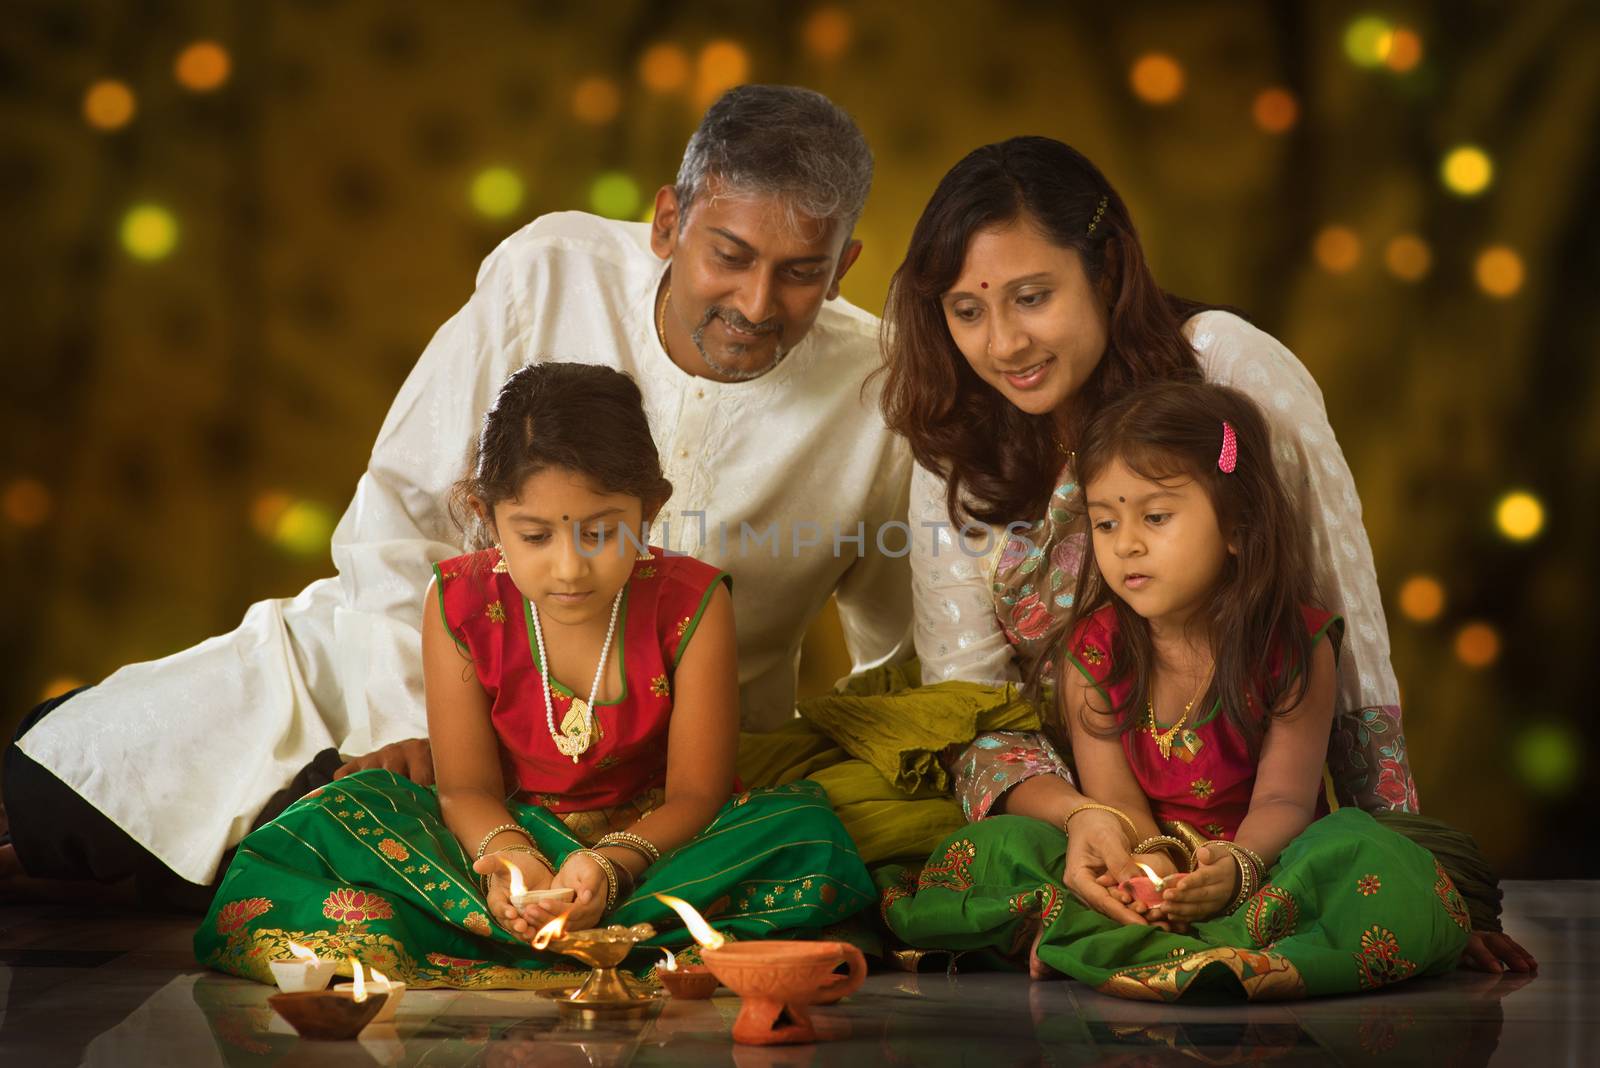 Family celebrating Diwali by szefei